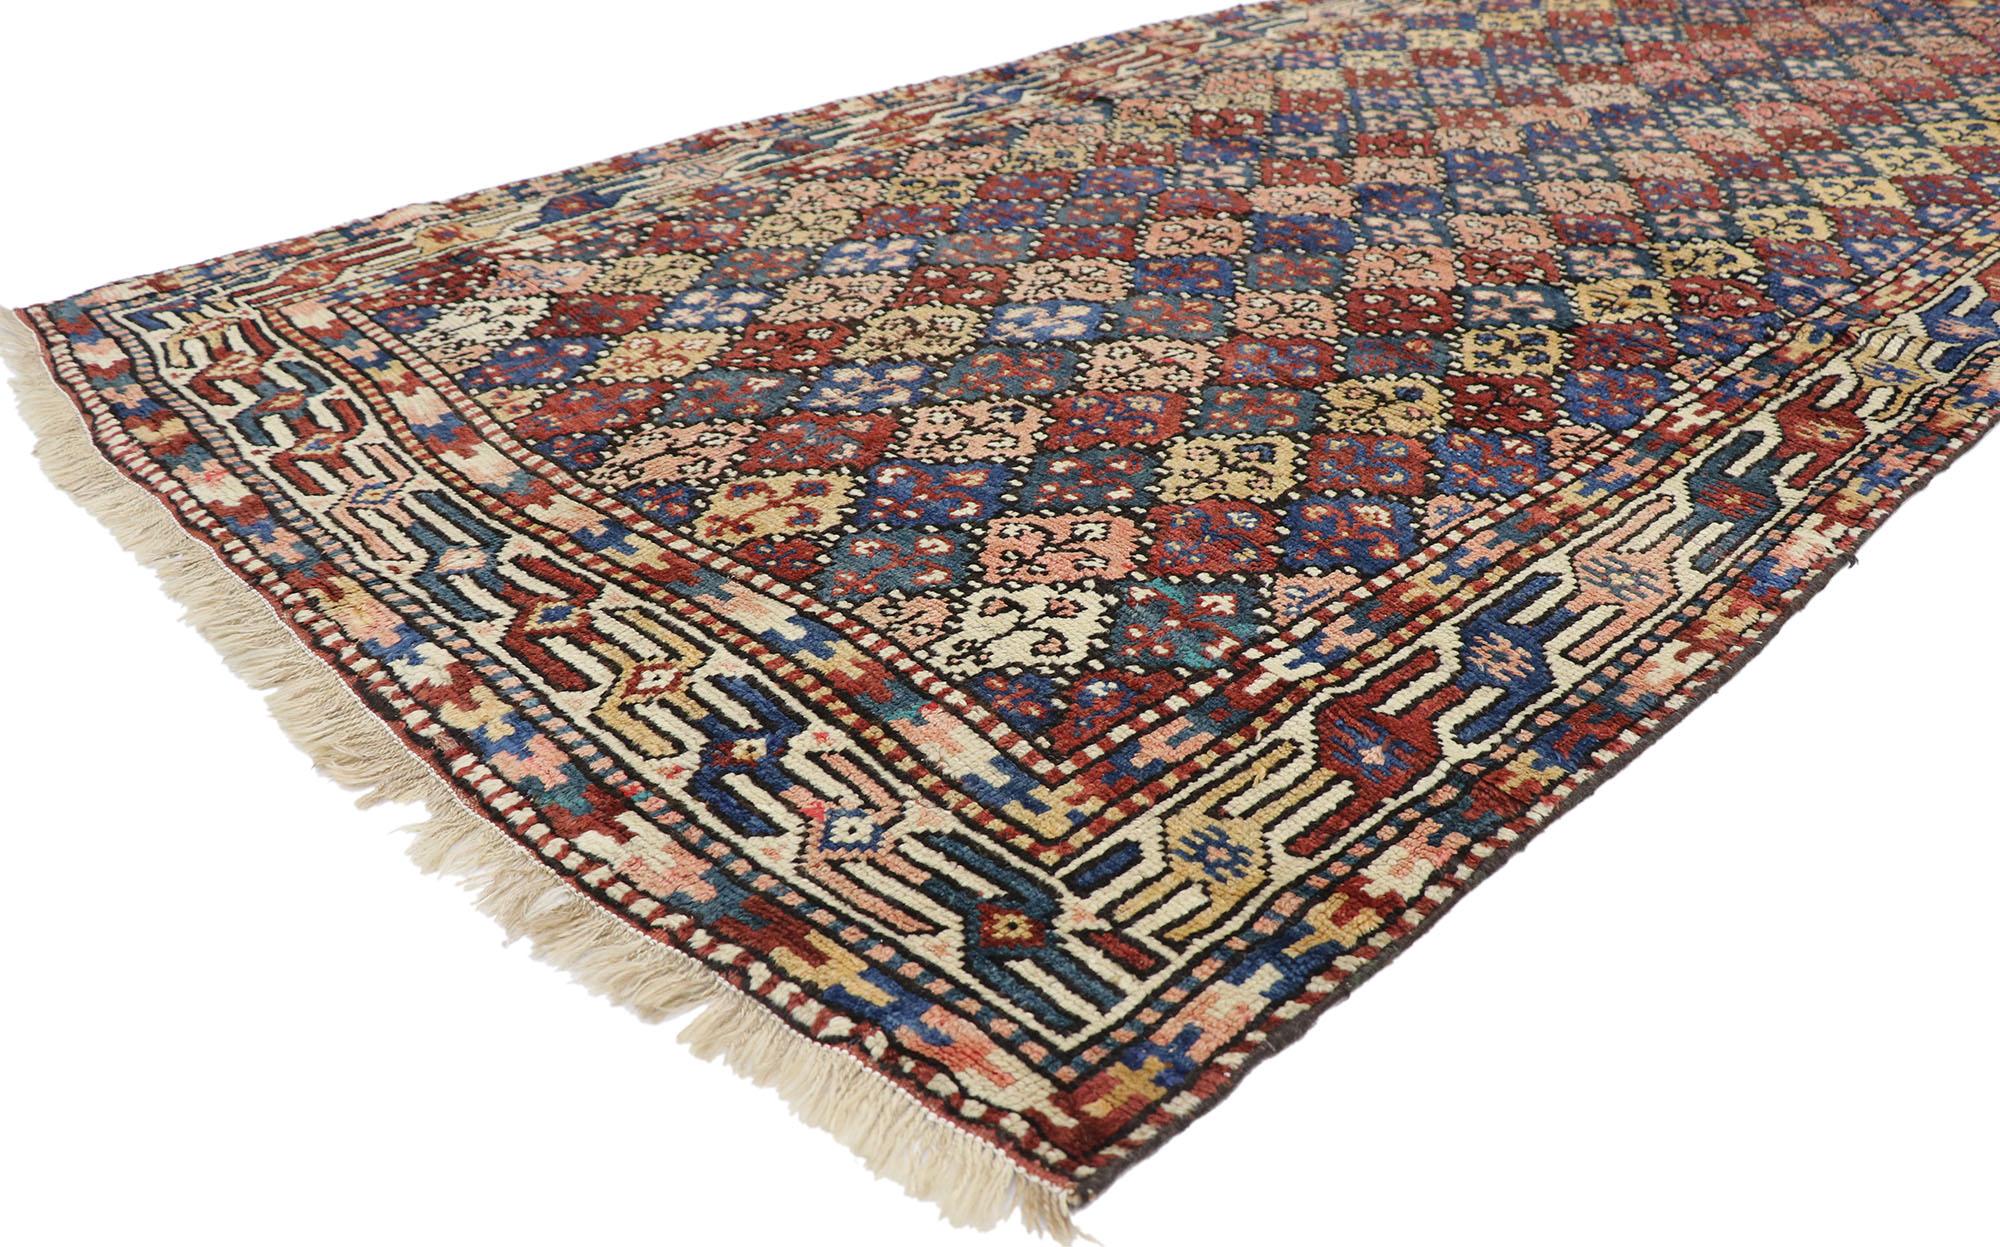 60893 Tapis ancien d'Azerbaïdjan avec style tribal Mid-Century Modern 04'05 x 09'09. Avec ses teintes chaudes et sa beauté sauvage, ce tapis ancien en laine d'Azerbaïdjan noué à la main incarne à merveille un style tribal moderne du milieu du